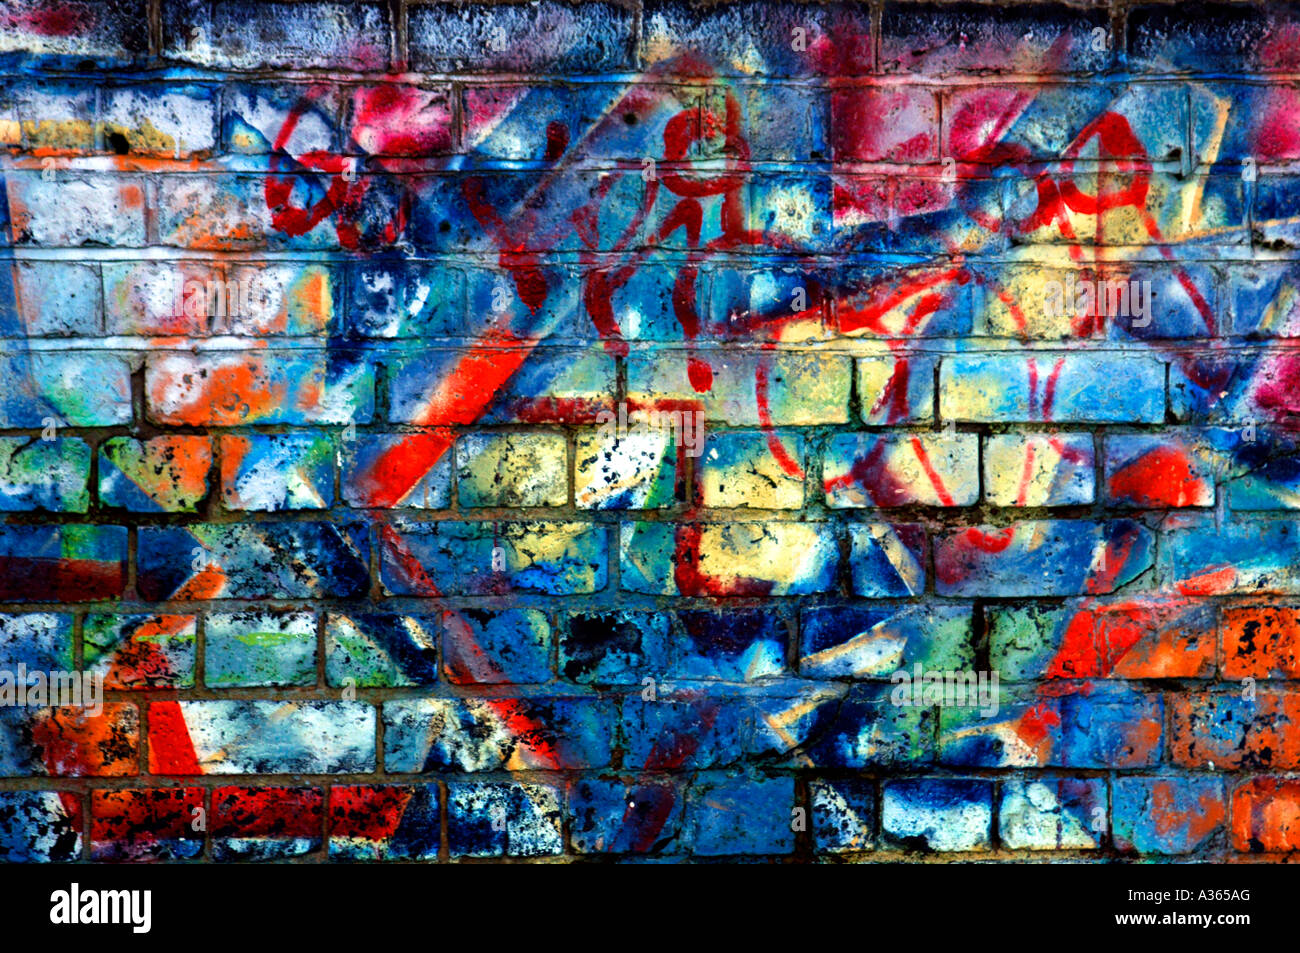  Oyihfvs Colorful Vintage Graffiti Brick Wall Paint Art